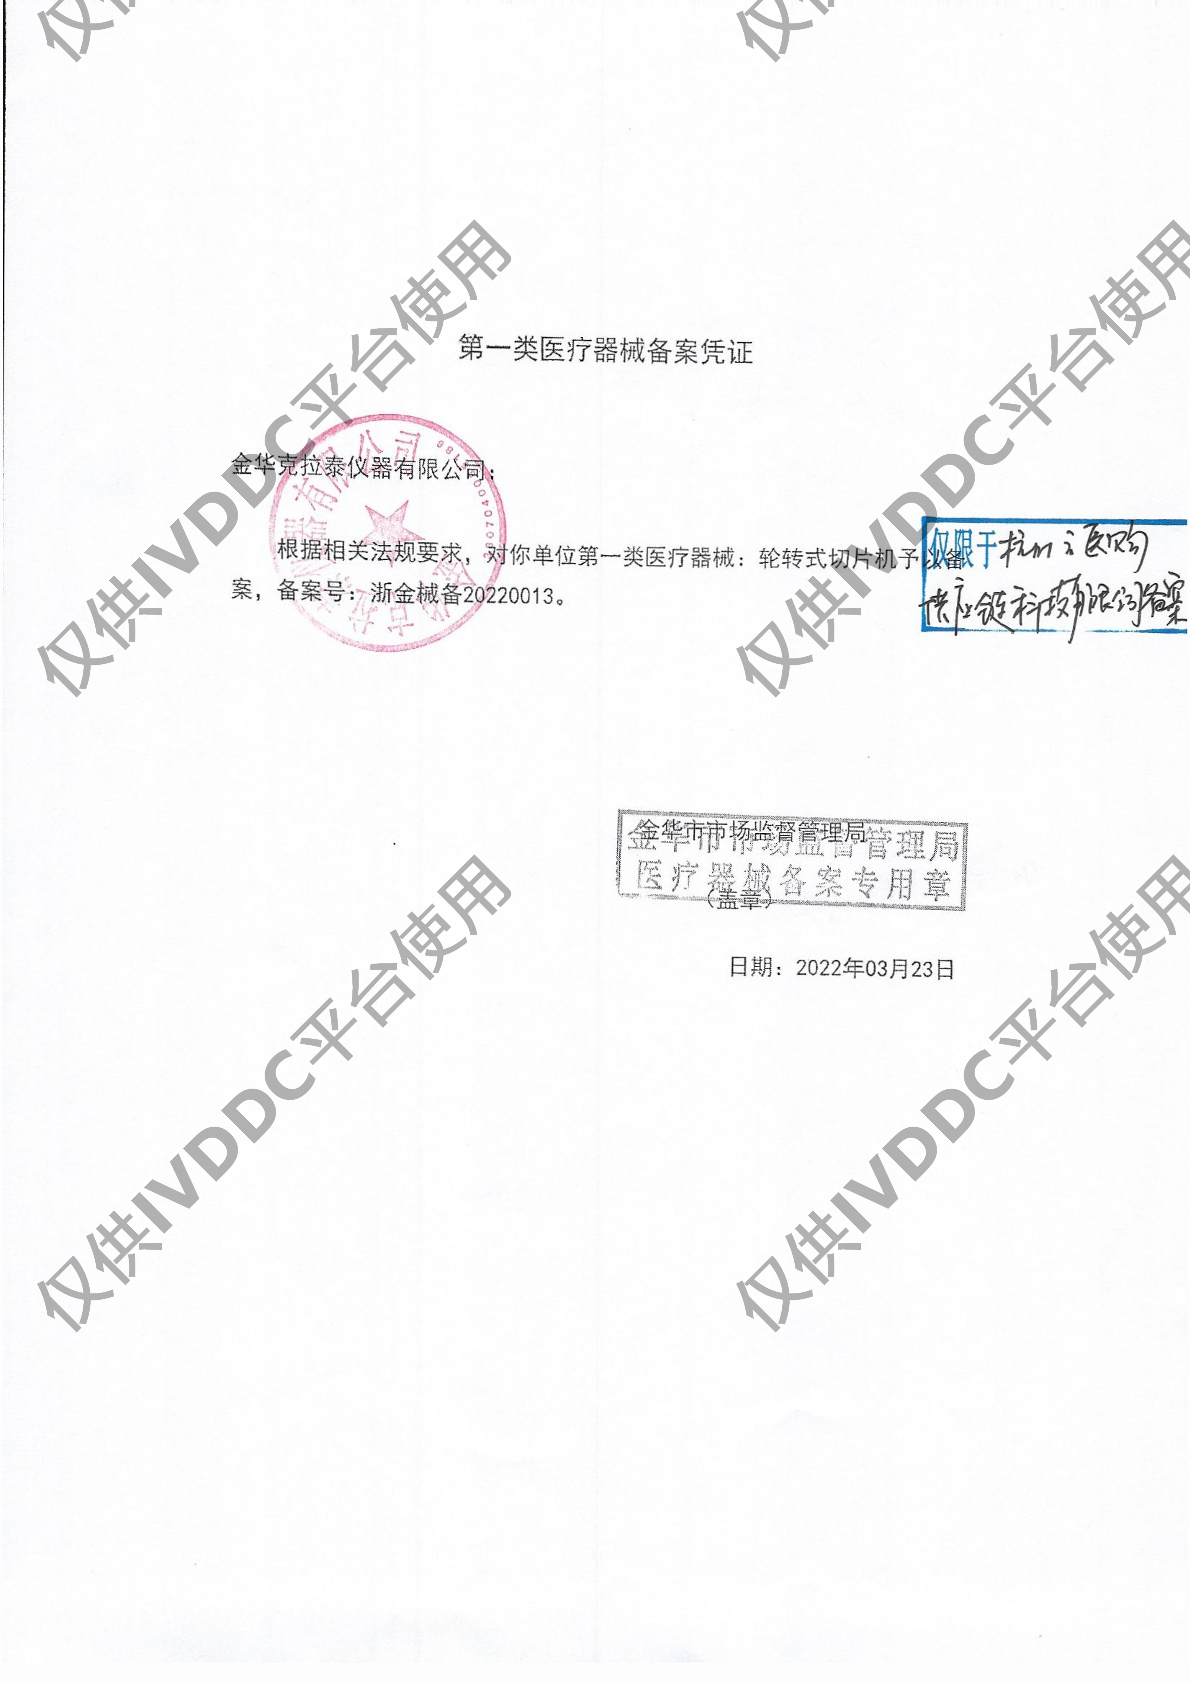 【金华克拉泰】 轮转式切片机 CR-601ST注册证